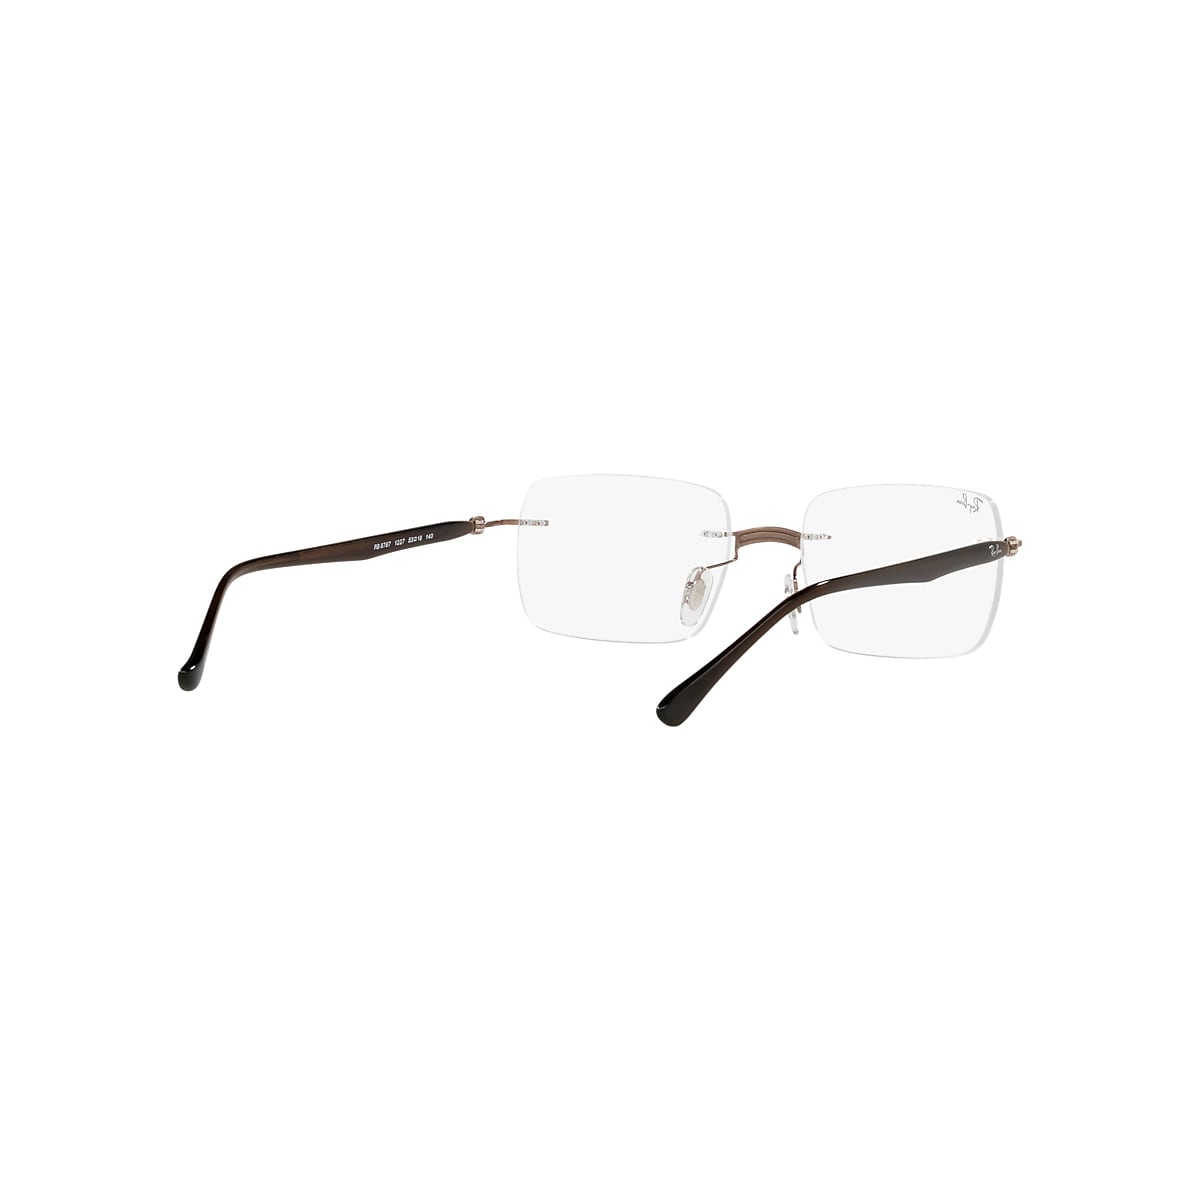 Rb8767 Optics Eyeglasses with Brown Frame | Ray-Ban®